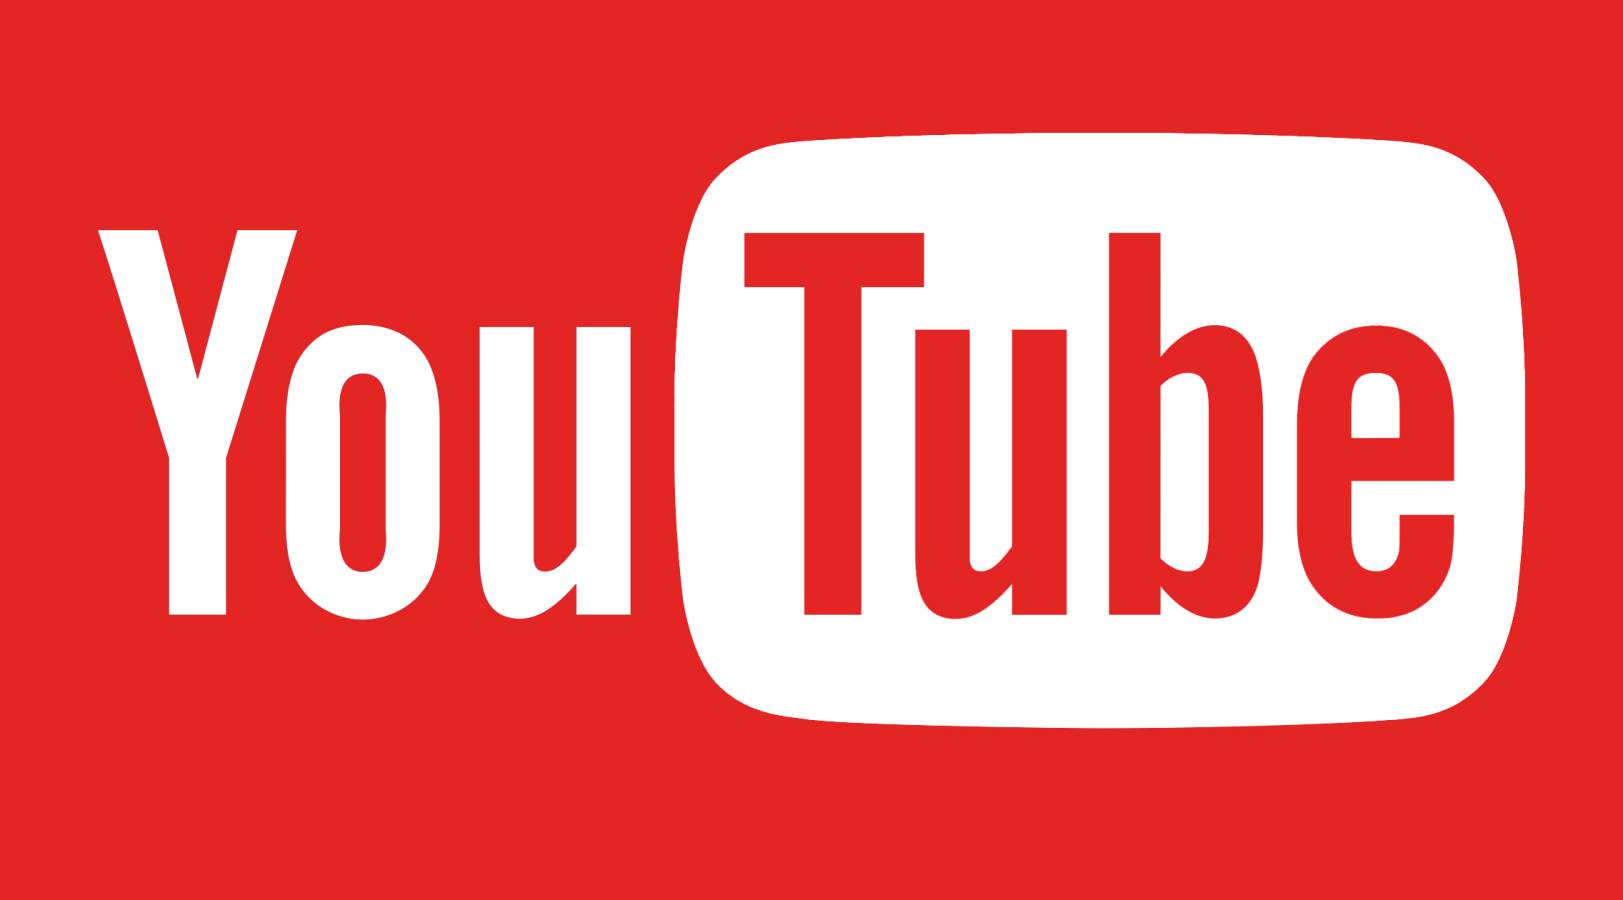 YouTube : nouvelle mise à jour publiée, quels changements seront apportés aux téléphones